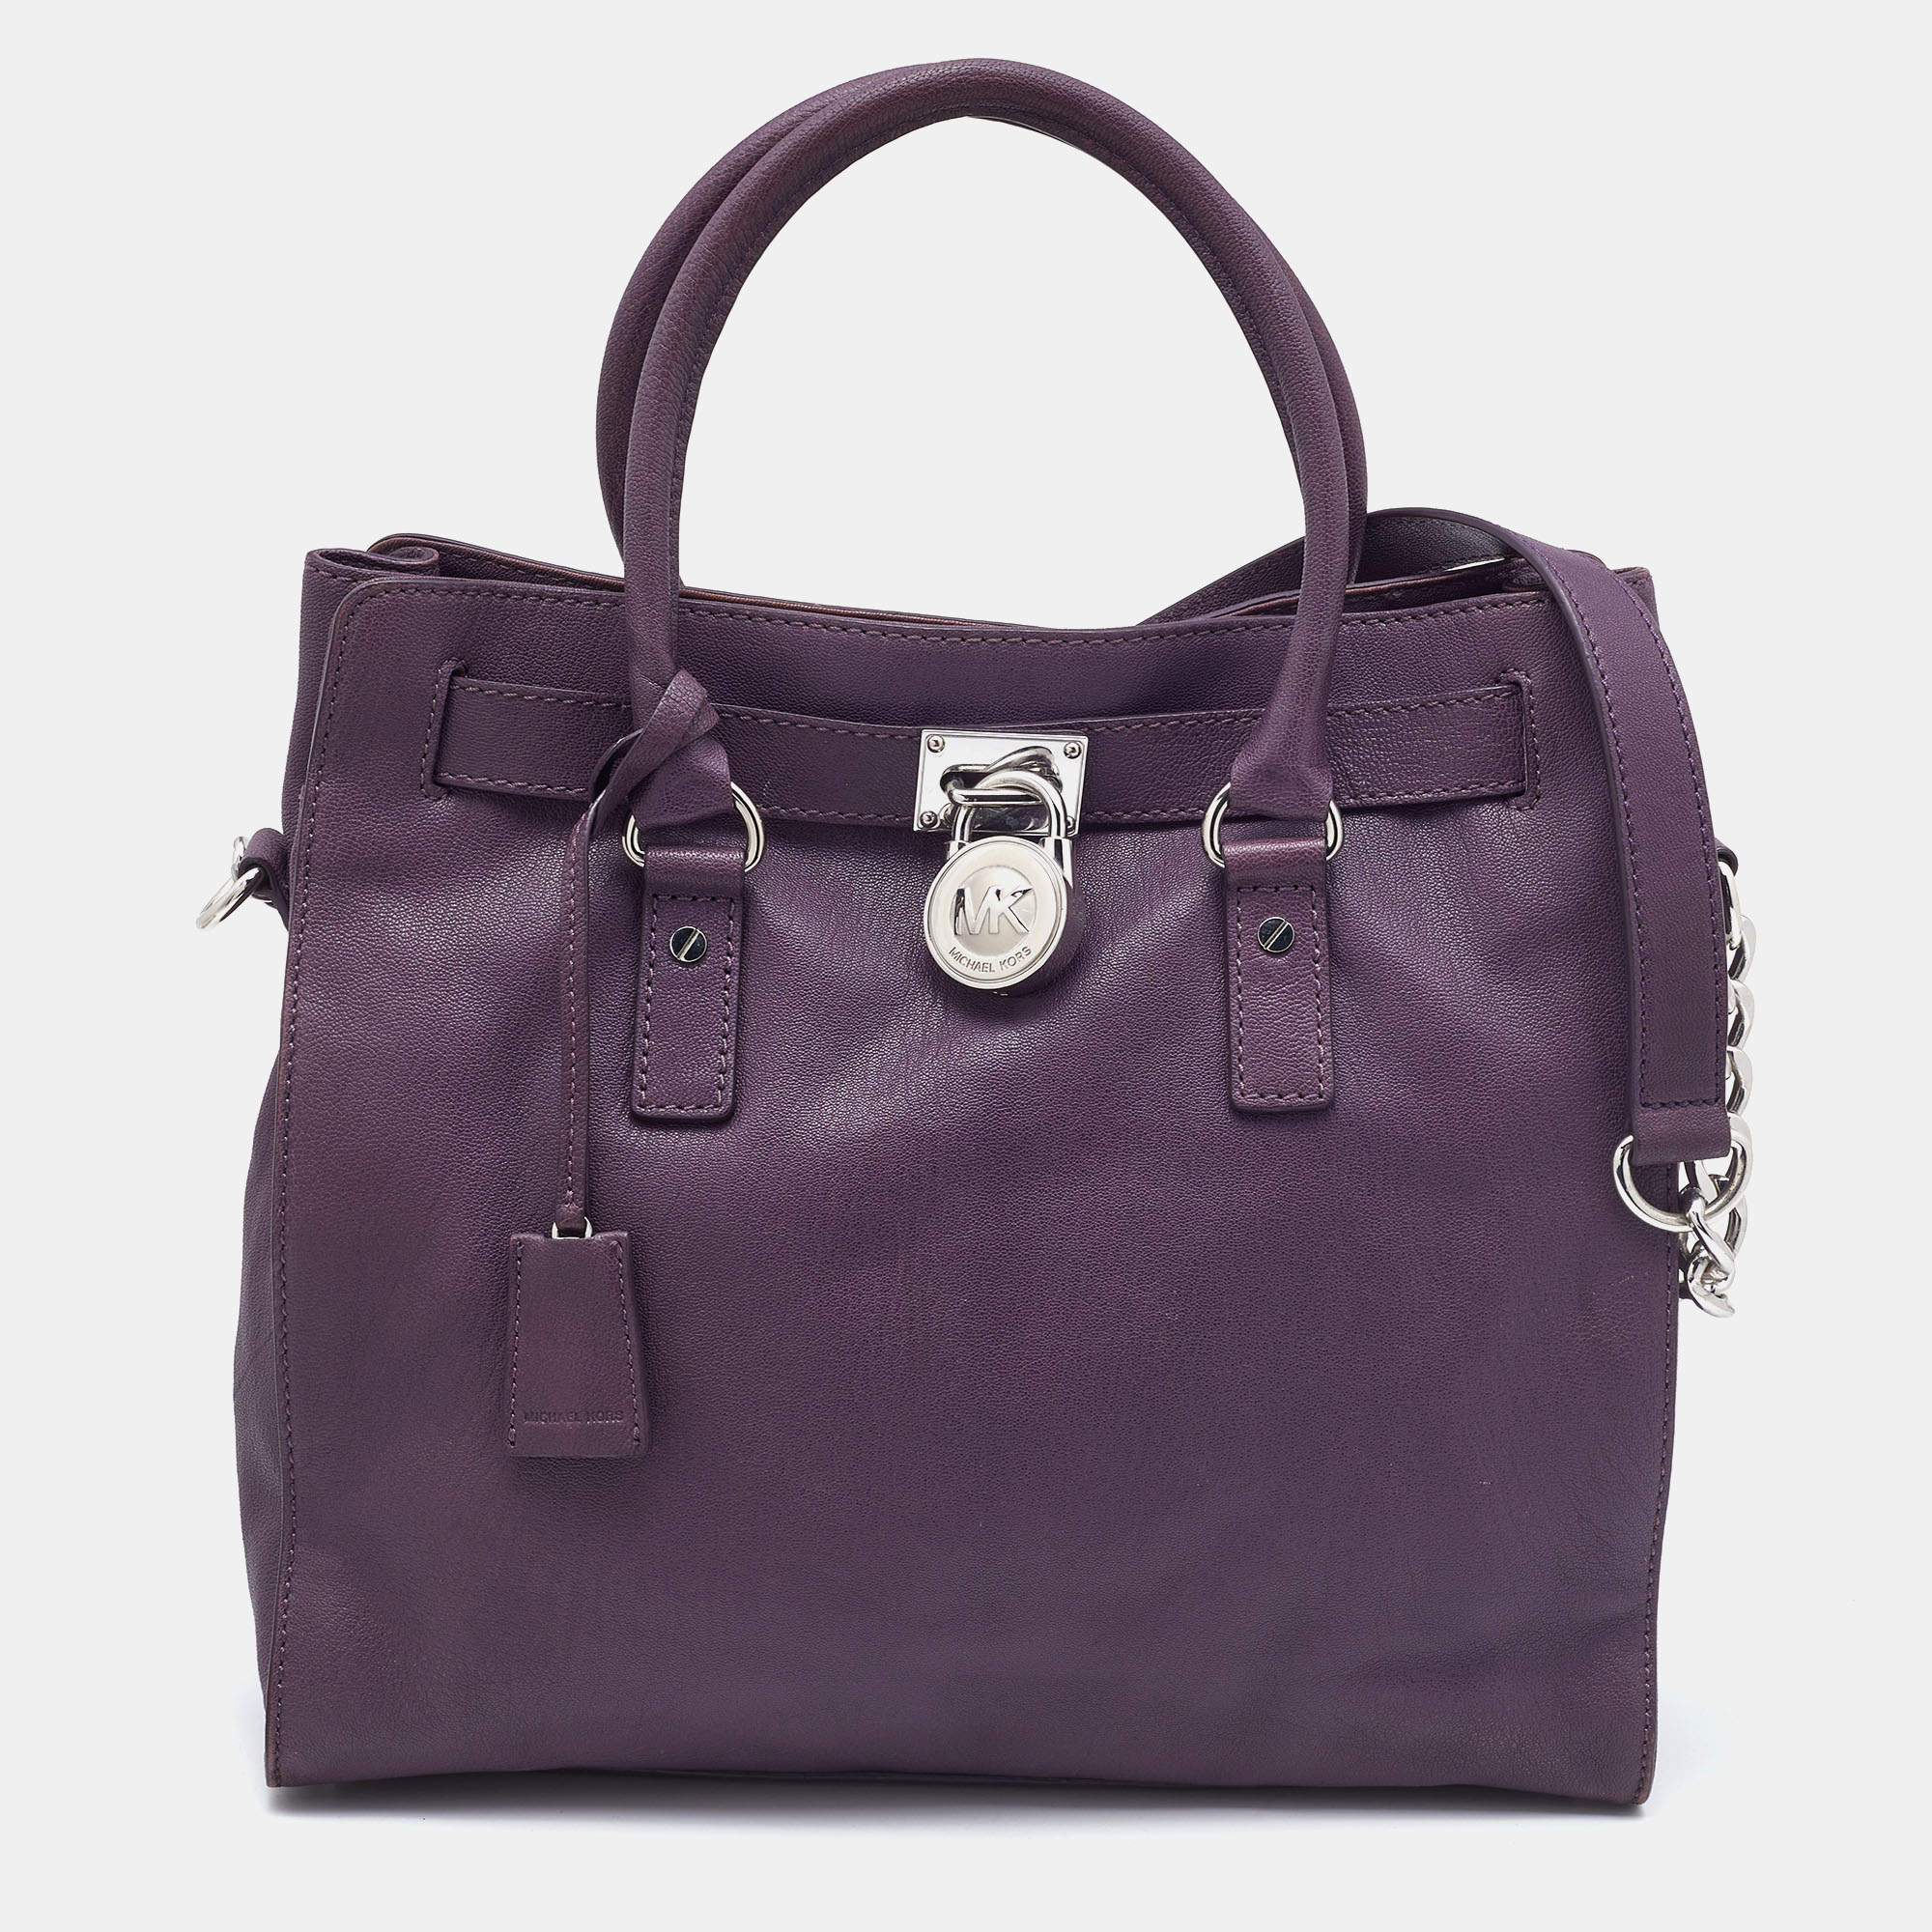 Michael Kors Bags | Michael Kors Hamilton Medium Satchel Bag Pale Blue | Color: Blue/Silver | Size: Medium | Vans_Shop's Closet